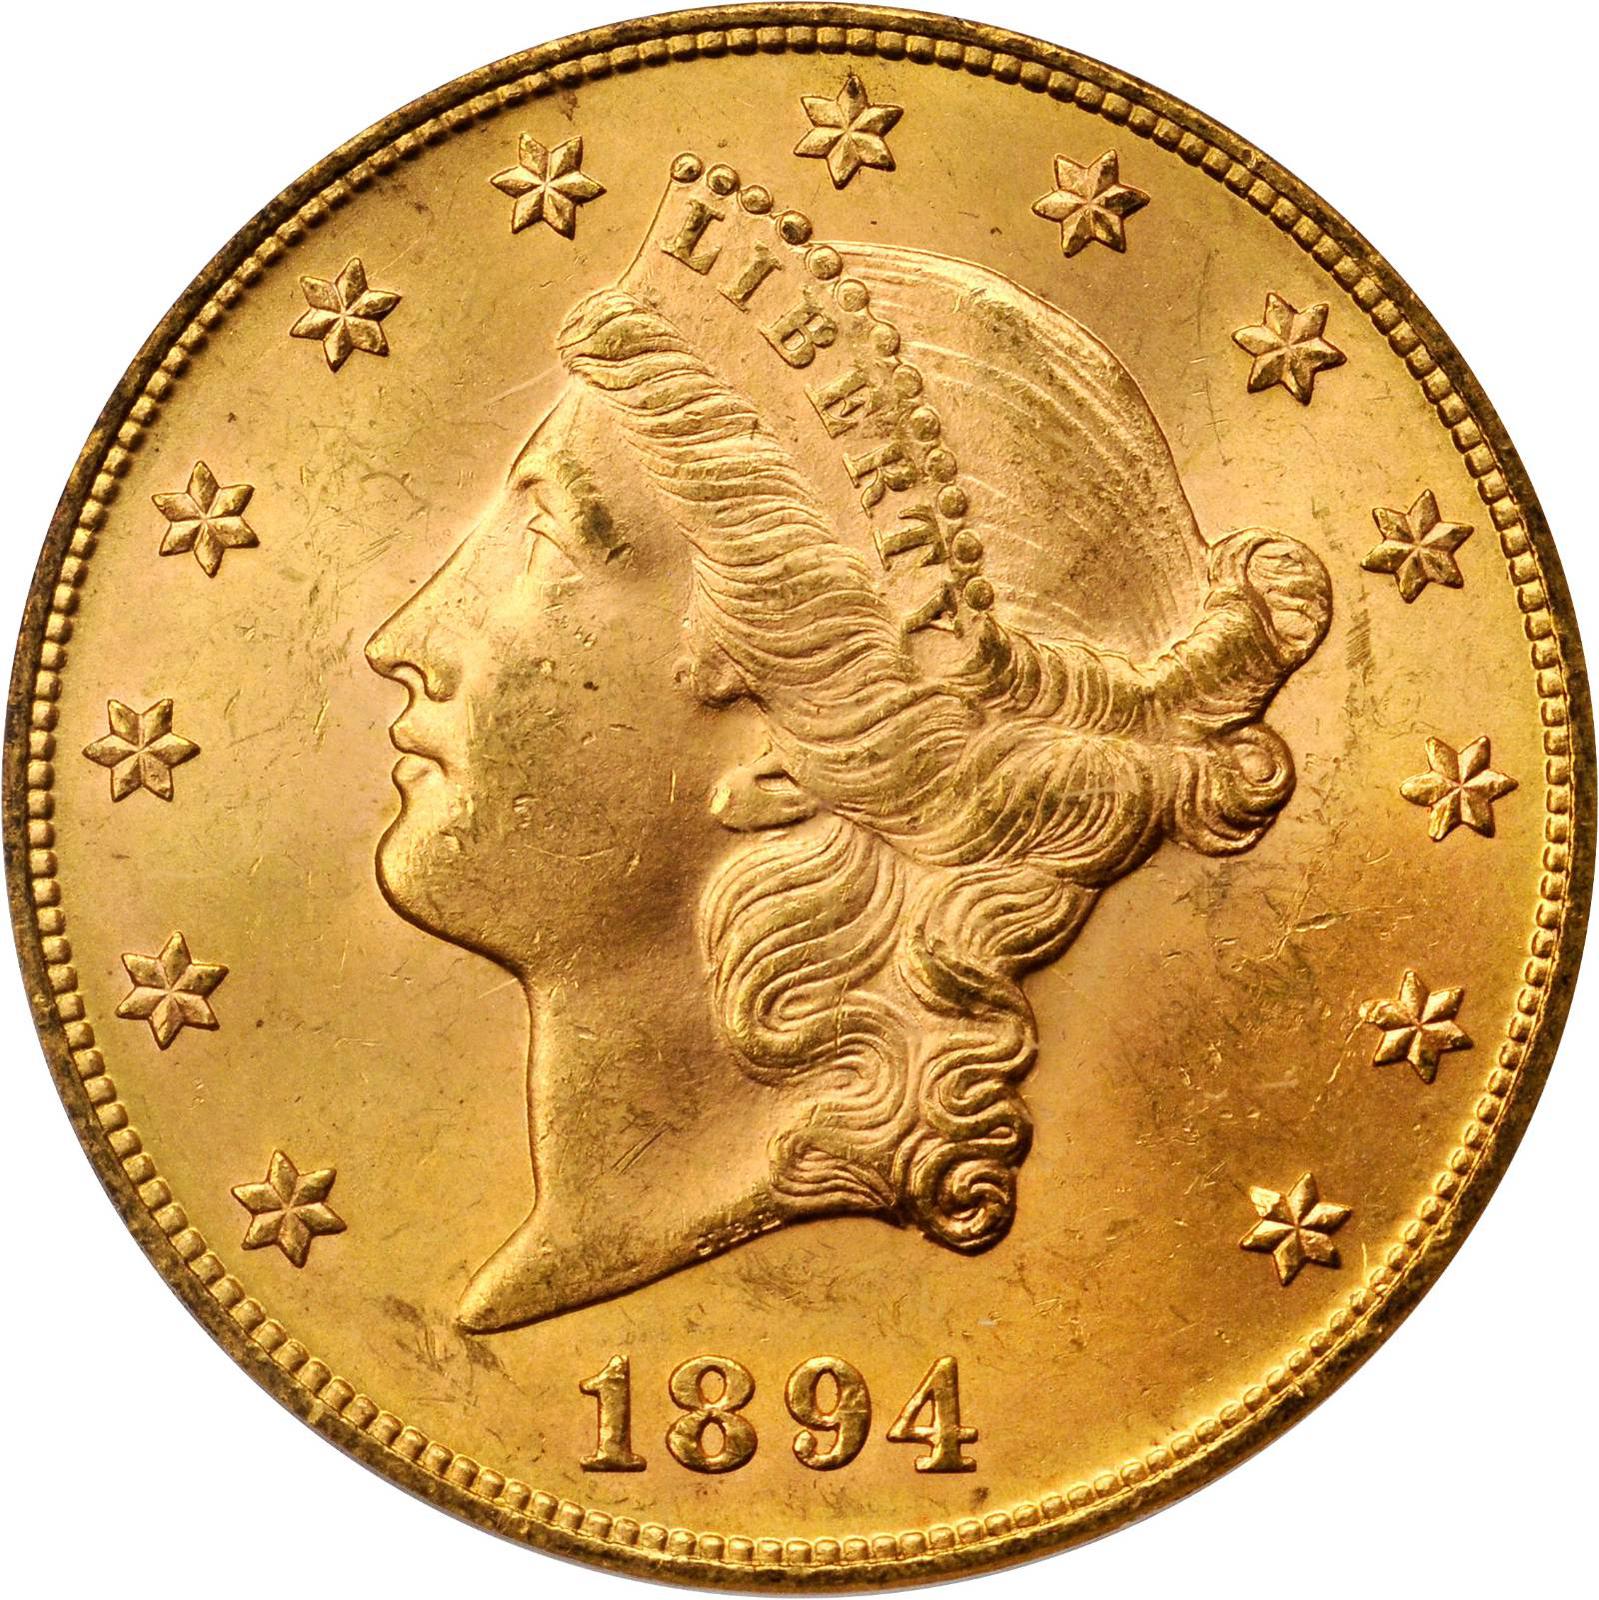 20 Dollar Gold Coin